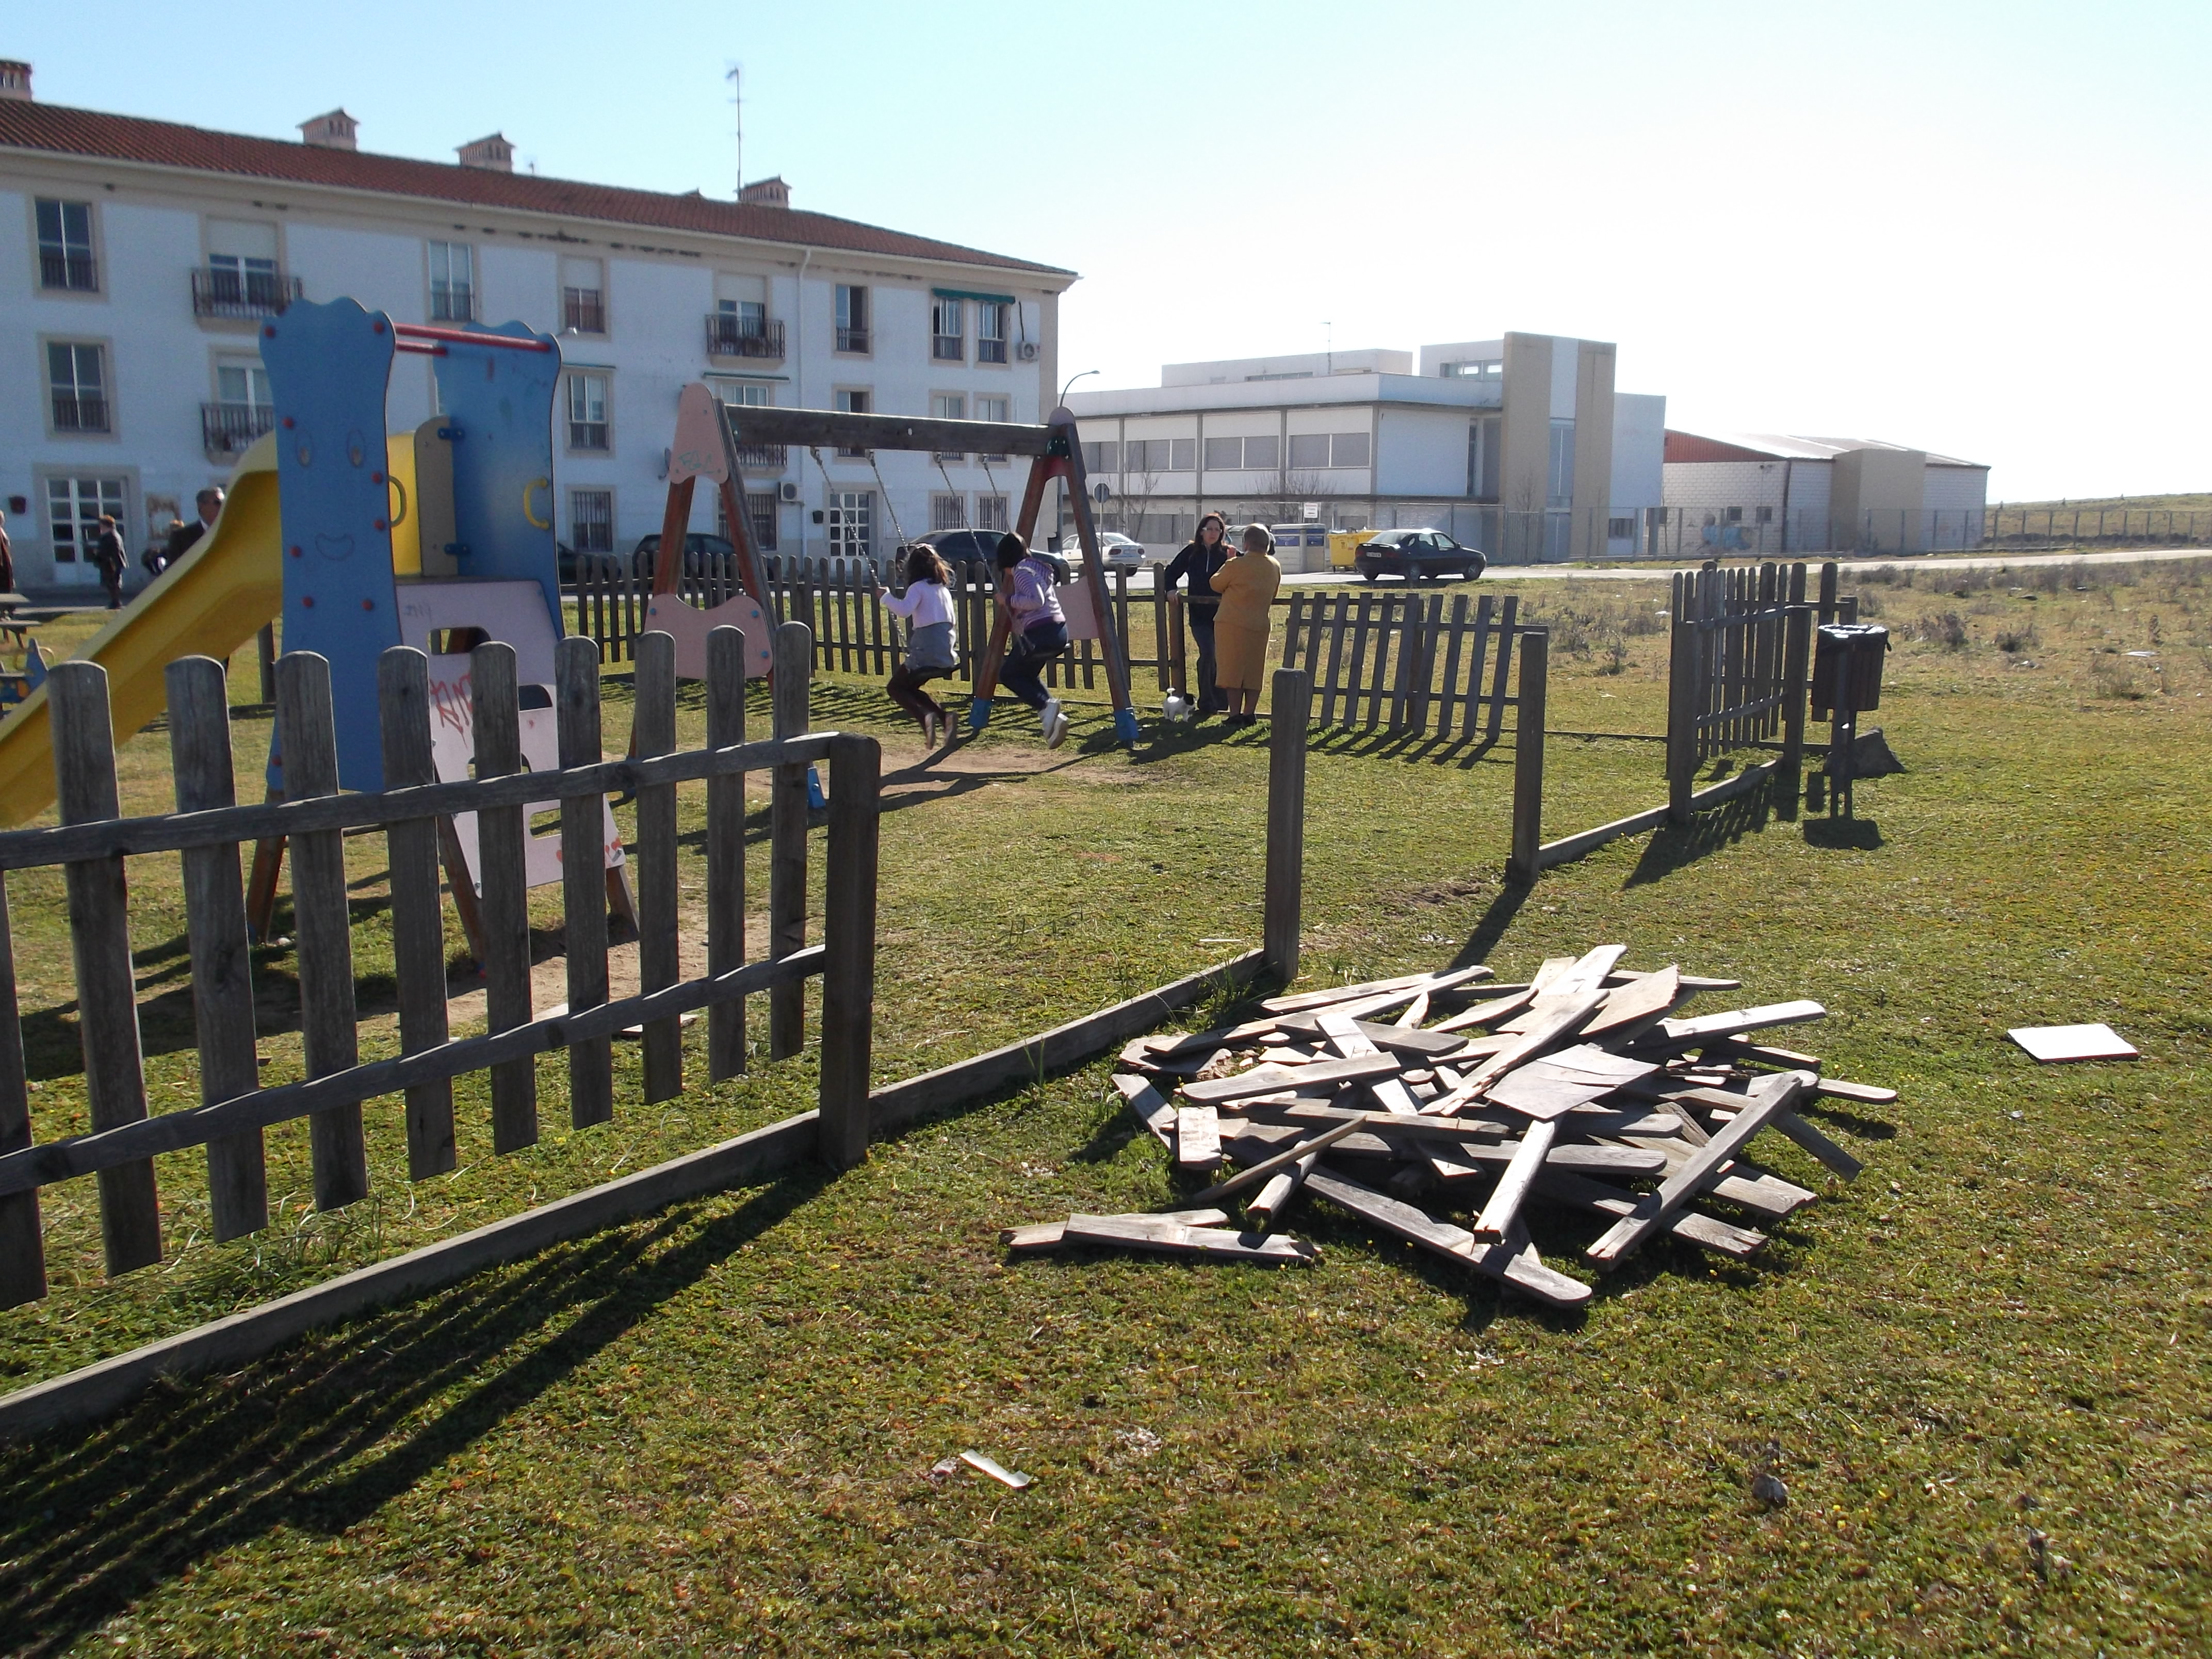 El Parque infantil junto a los Mártires, , objeto de destrozos